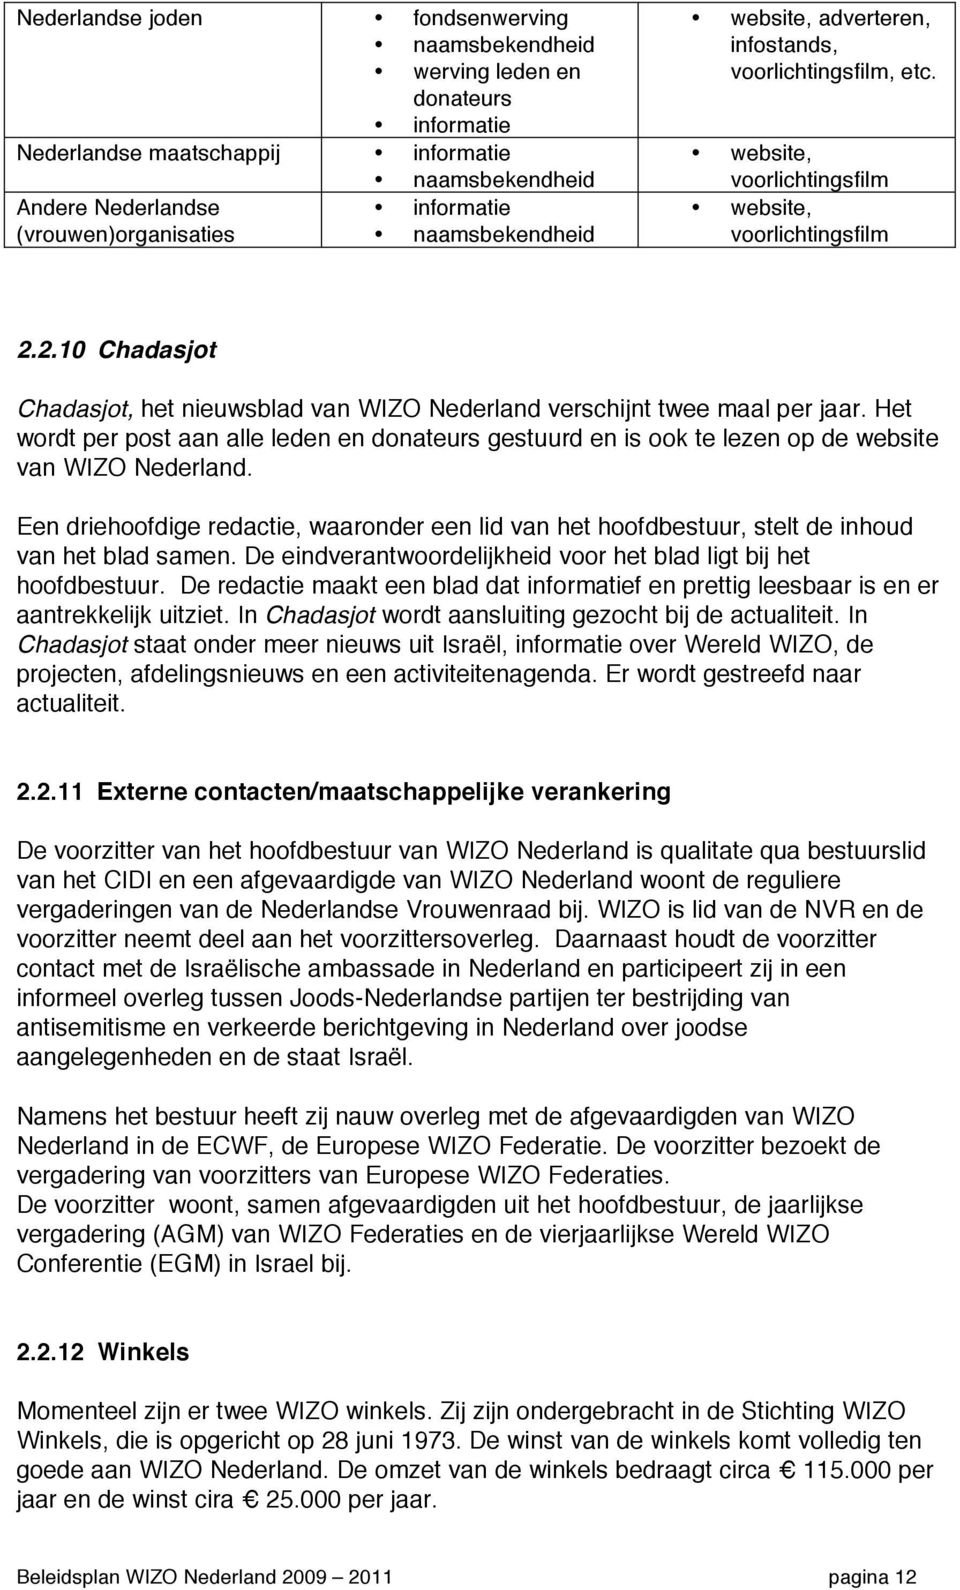 2.10 Chadasjot Chadasjot, het nieuwsblad van WIZO Nederland verschijnt twee maal per jaar. Het wordt per post aan alle leden en donateurs gestuurd en is ook te lezen op de website van WIZO Nederland.